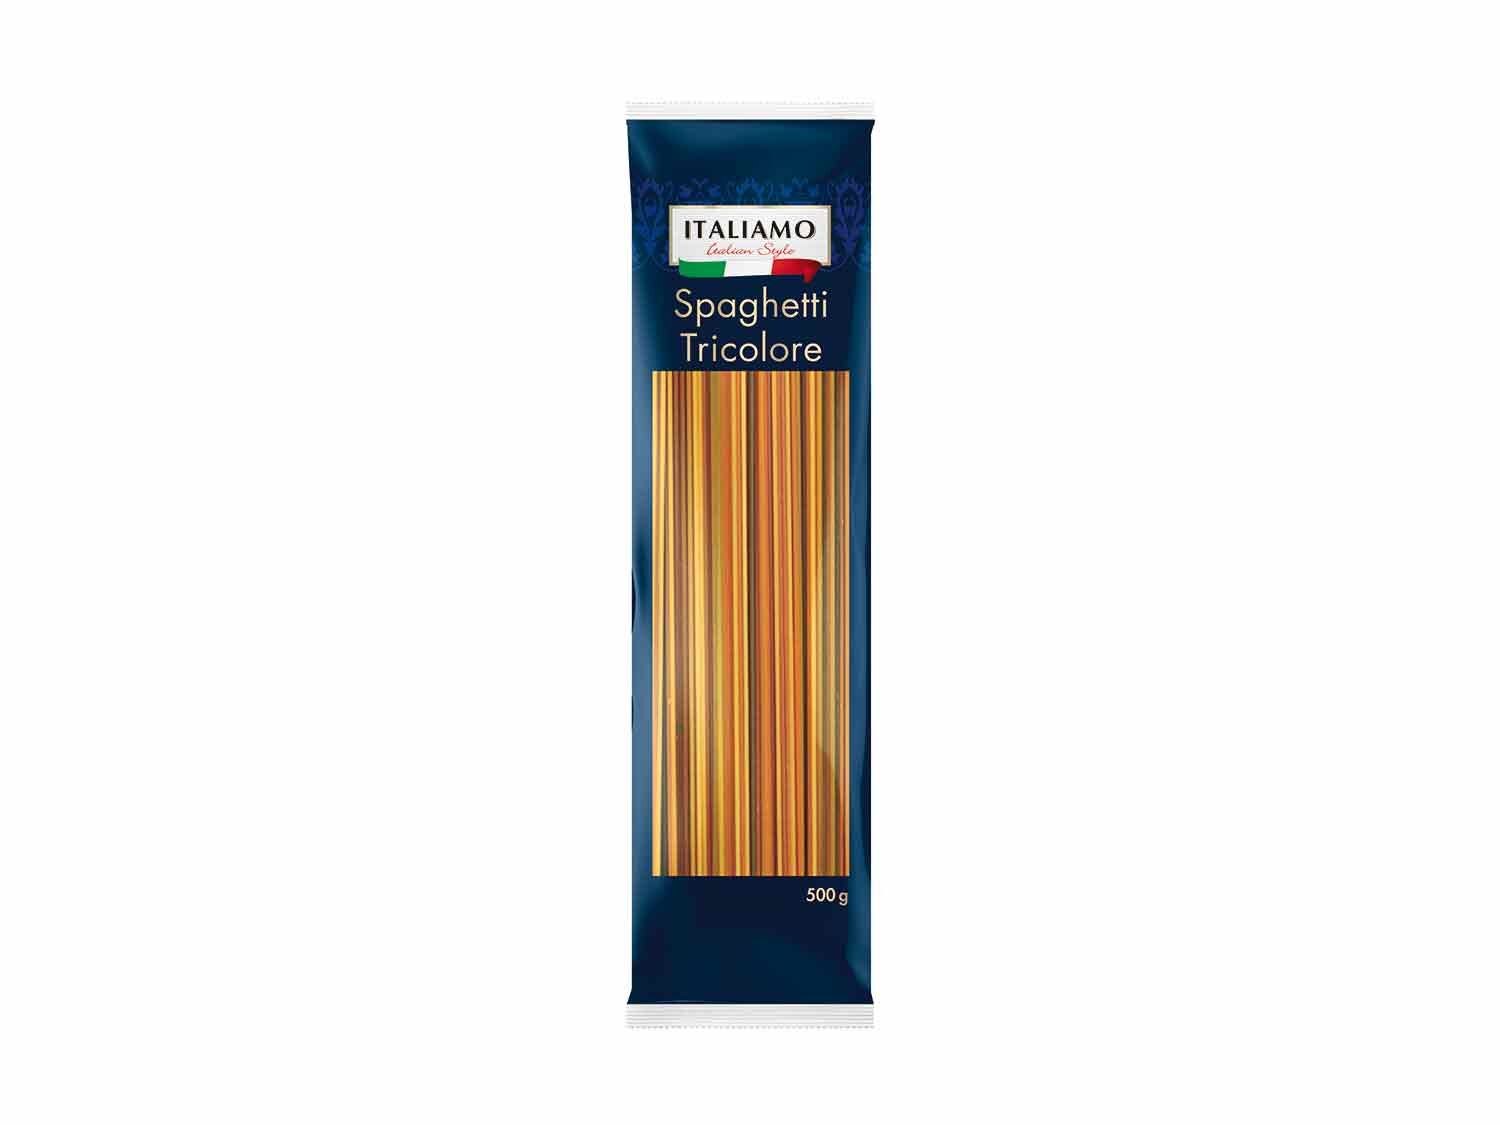 Spaghetti tricolor